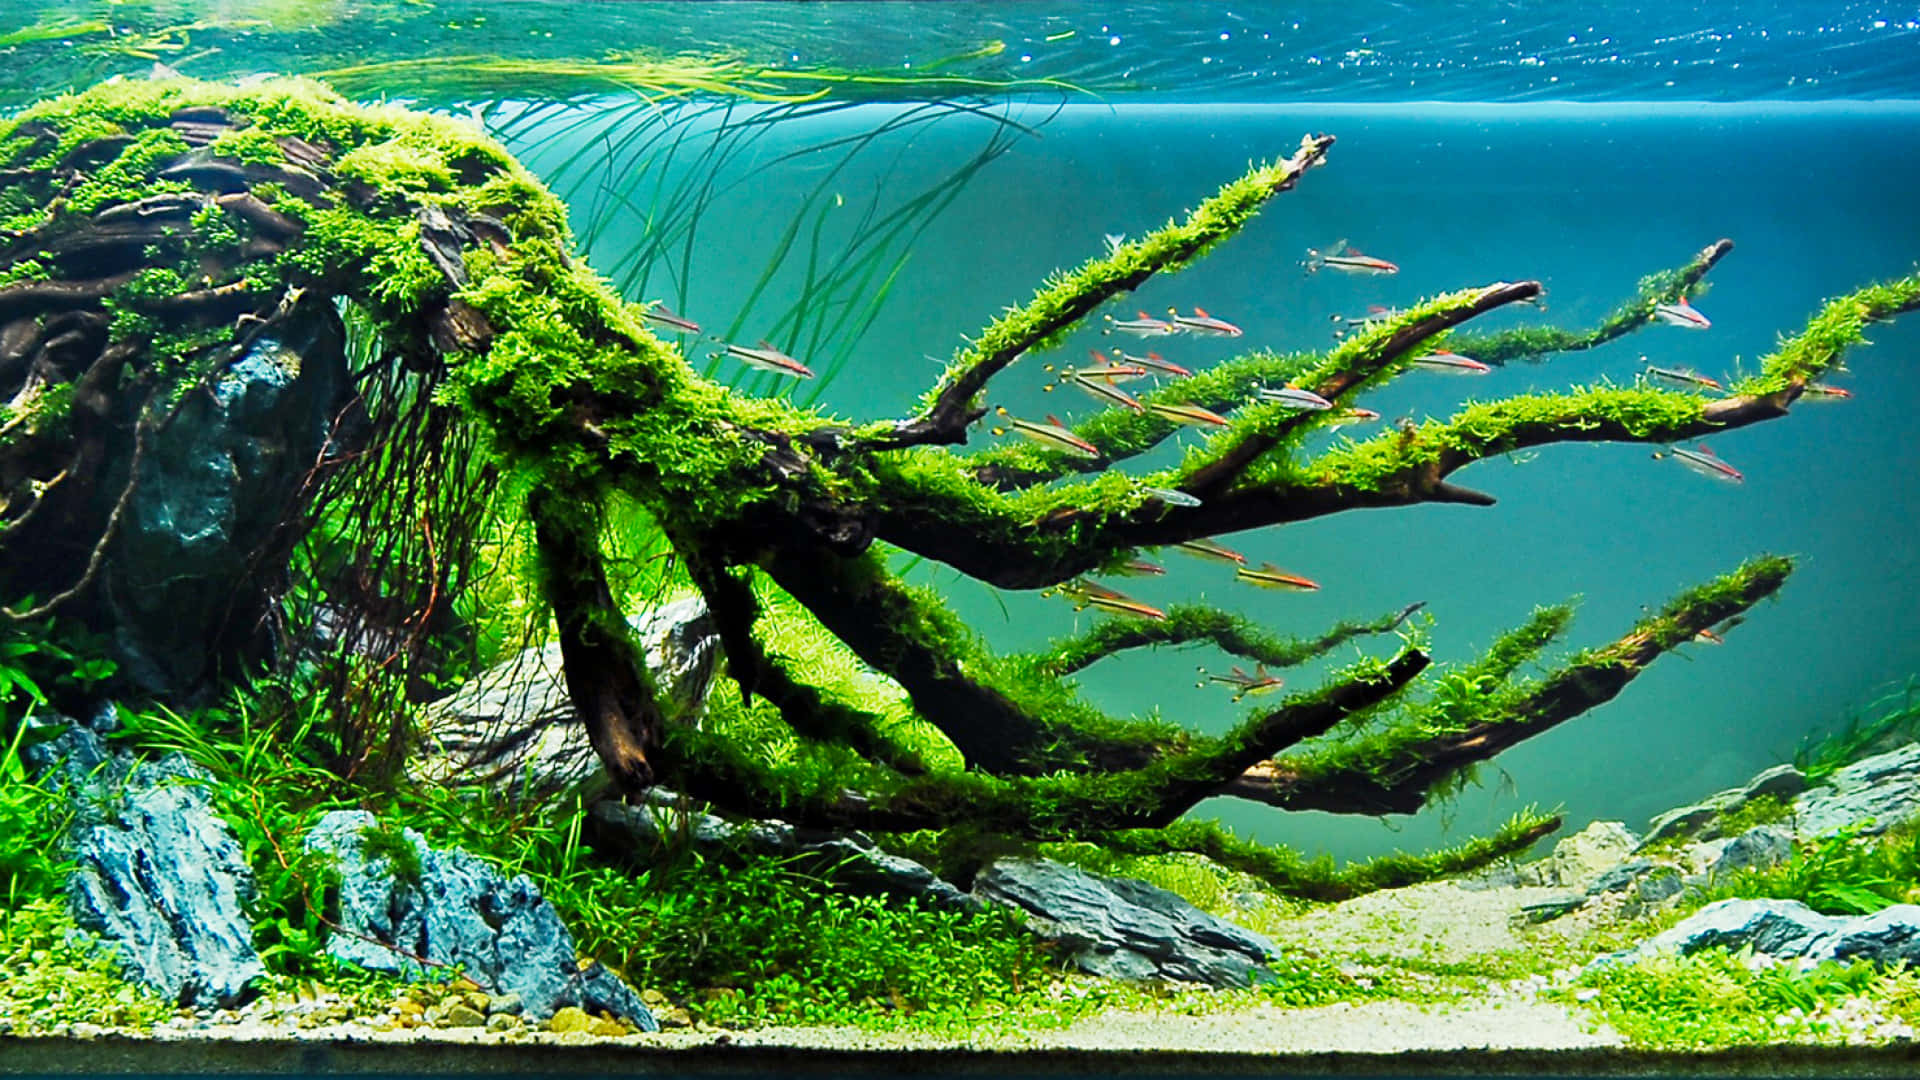 Download Full HD 3D Aquarium Wallpapers | Aquarium live wallpaper, Aquarium  screensaver, Underwater wallpaper